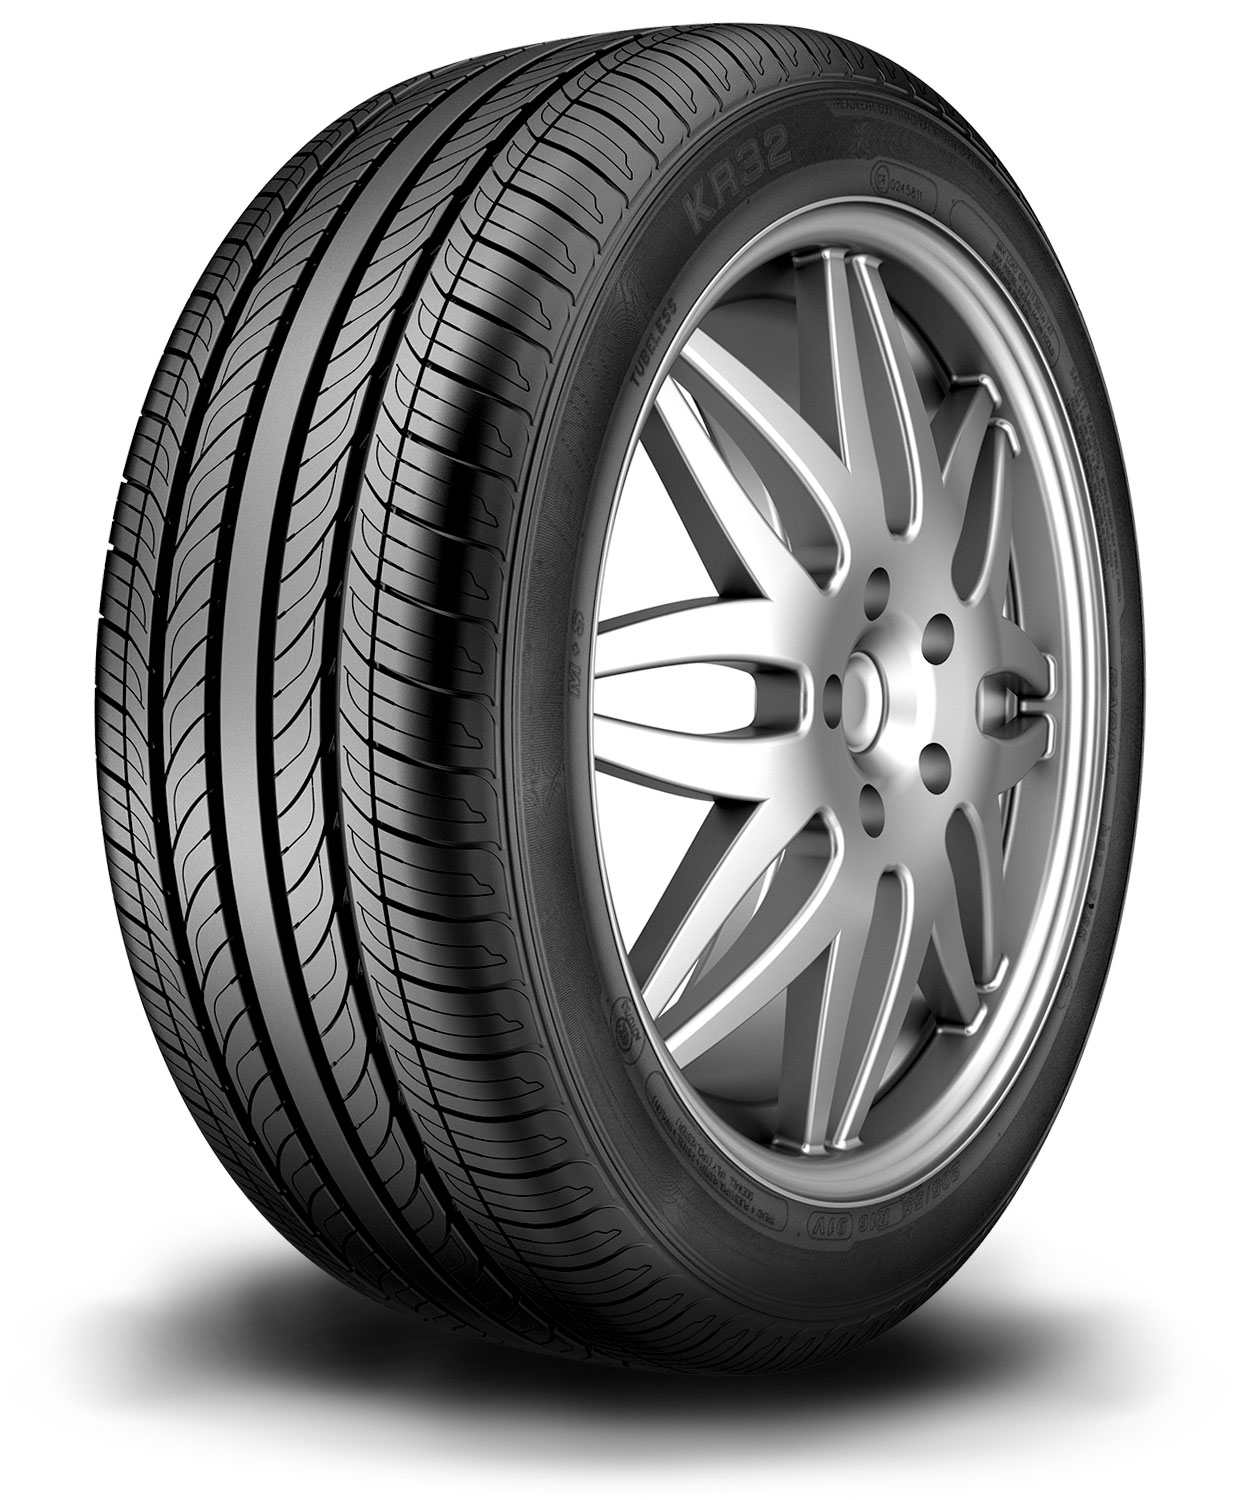 Kenda Kuavela SL - Tyre reviews and ratings